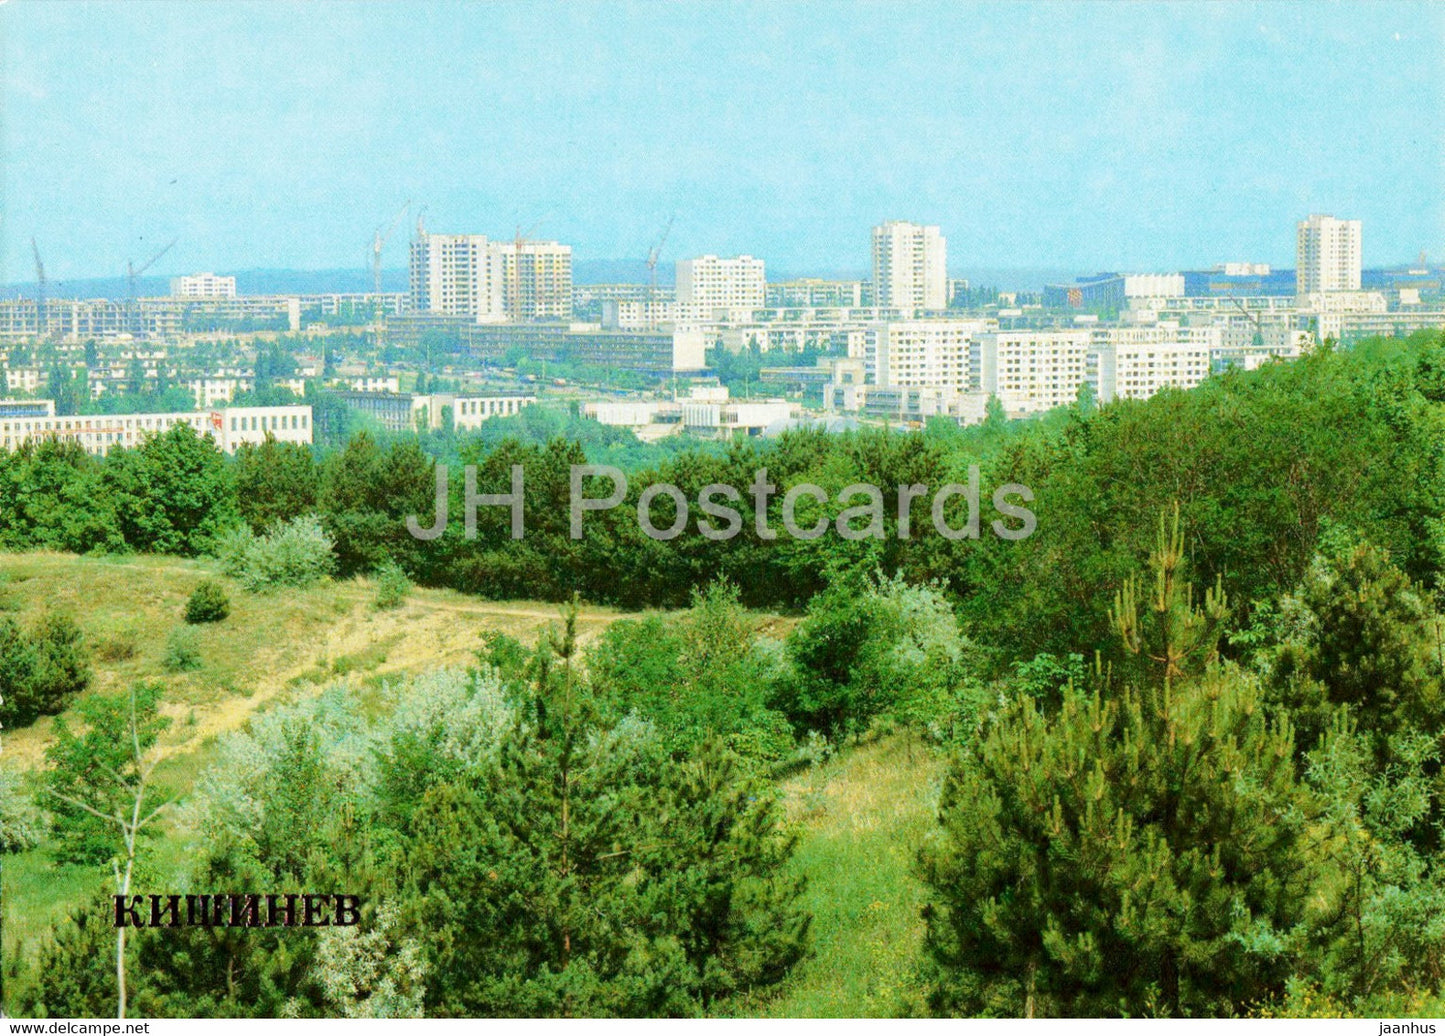 housing area Ryshkanovka - Chisinau - Kishinev - 1 - 1983 - Moldova USSR - unused - JH Postcards